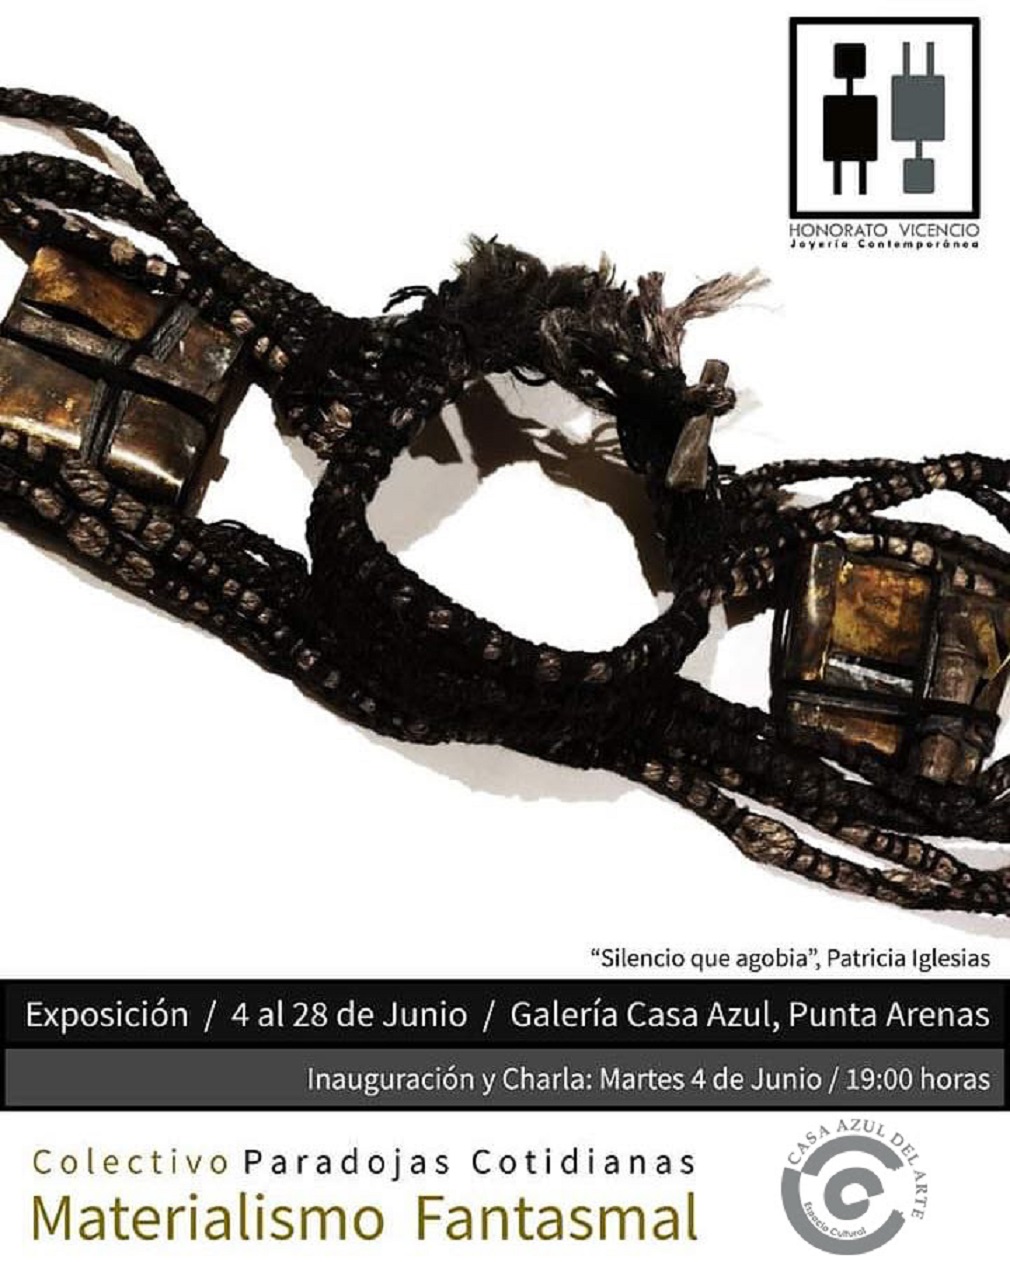 Materialismo Fantasmal: Exposición de Joyería Contemporánea desde el 04 al 25 de junio en Casa Azul del Arte de Punta Arenas